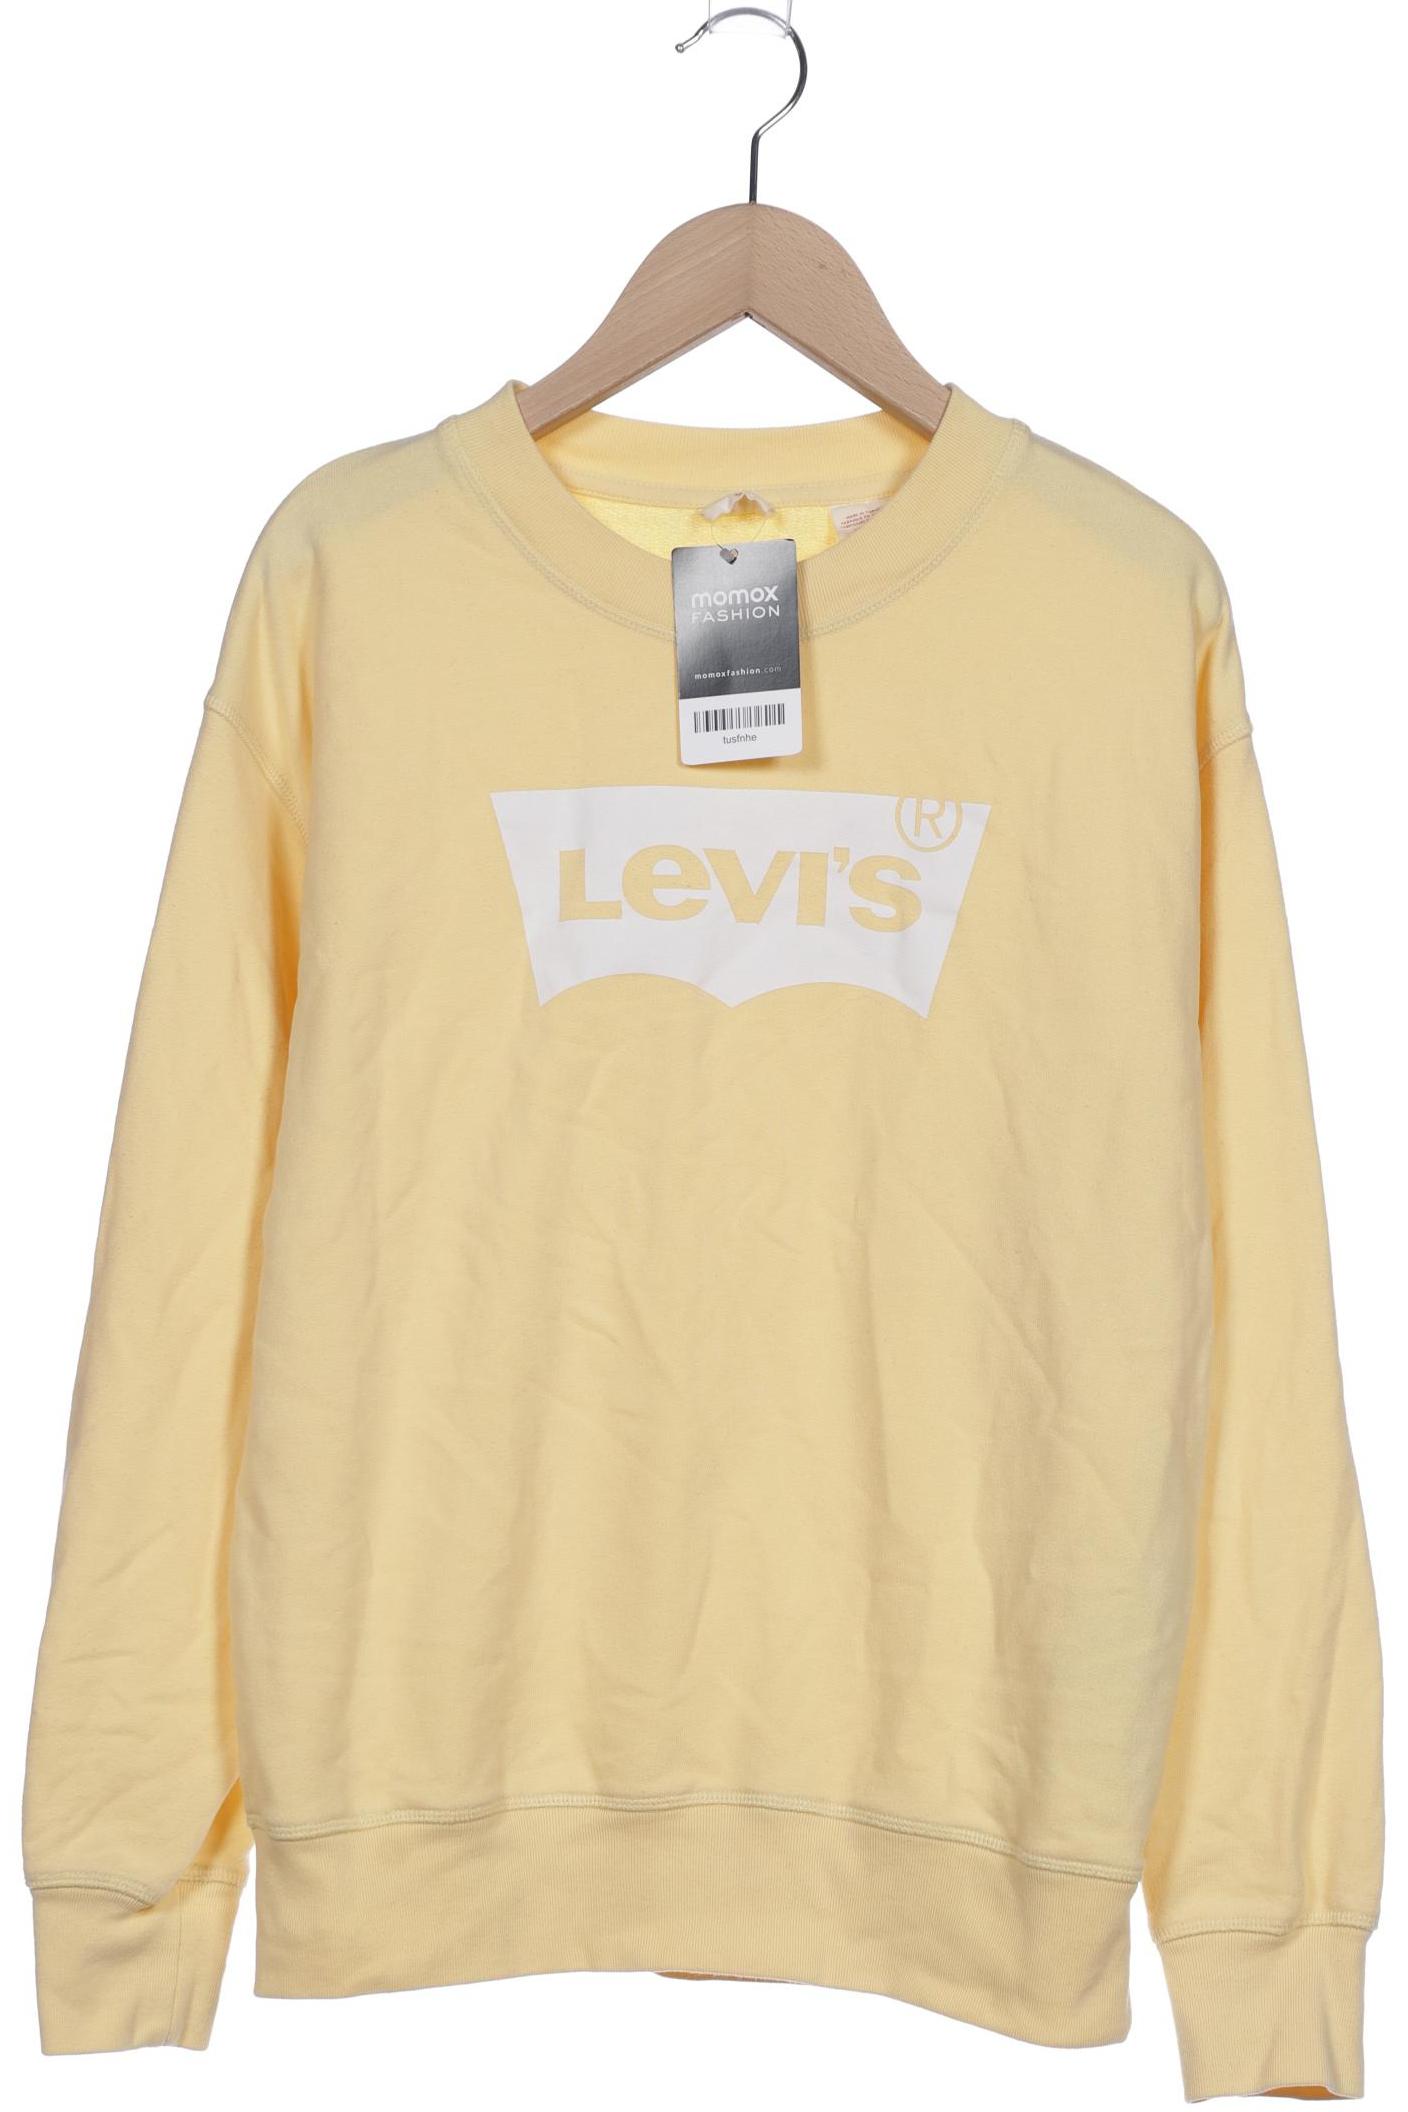 Levis Damen Sweatshirt, gelb, Gr. 34 von Levis